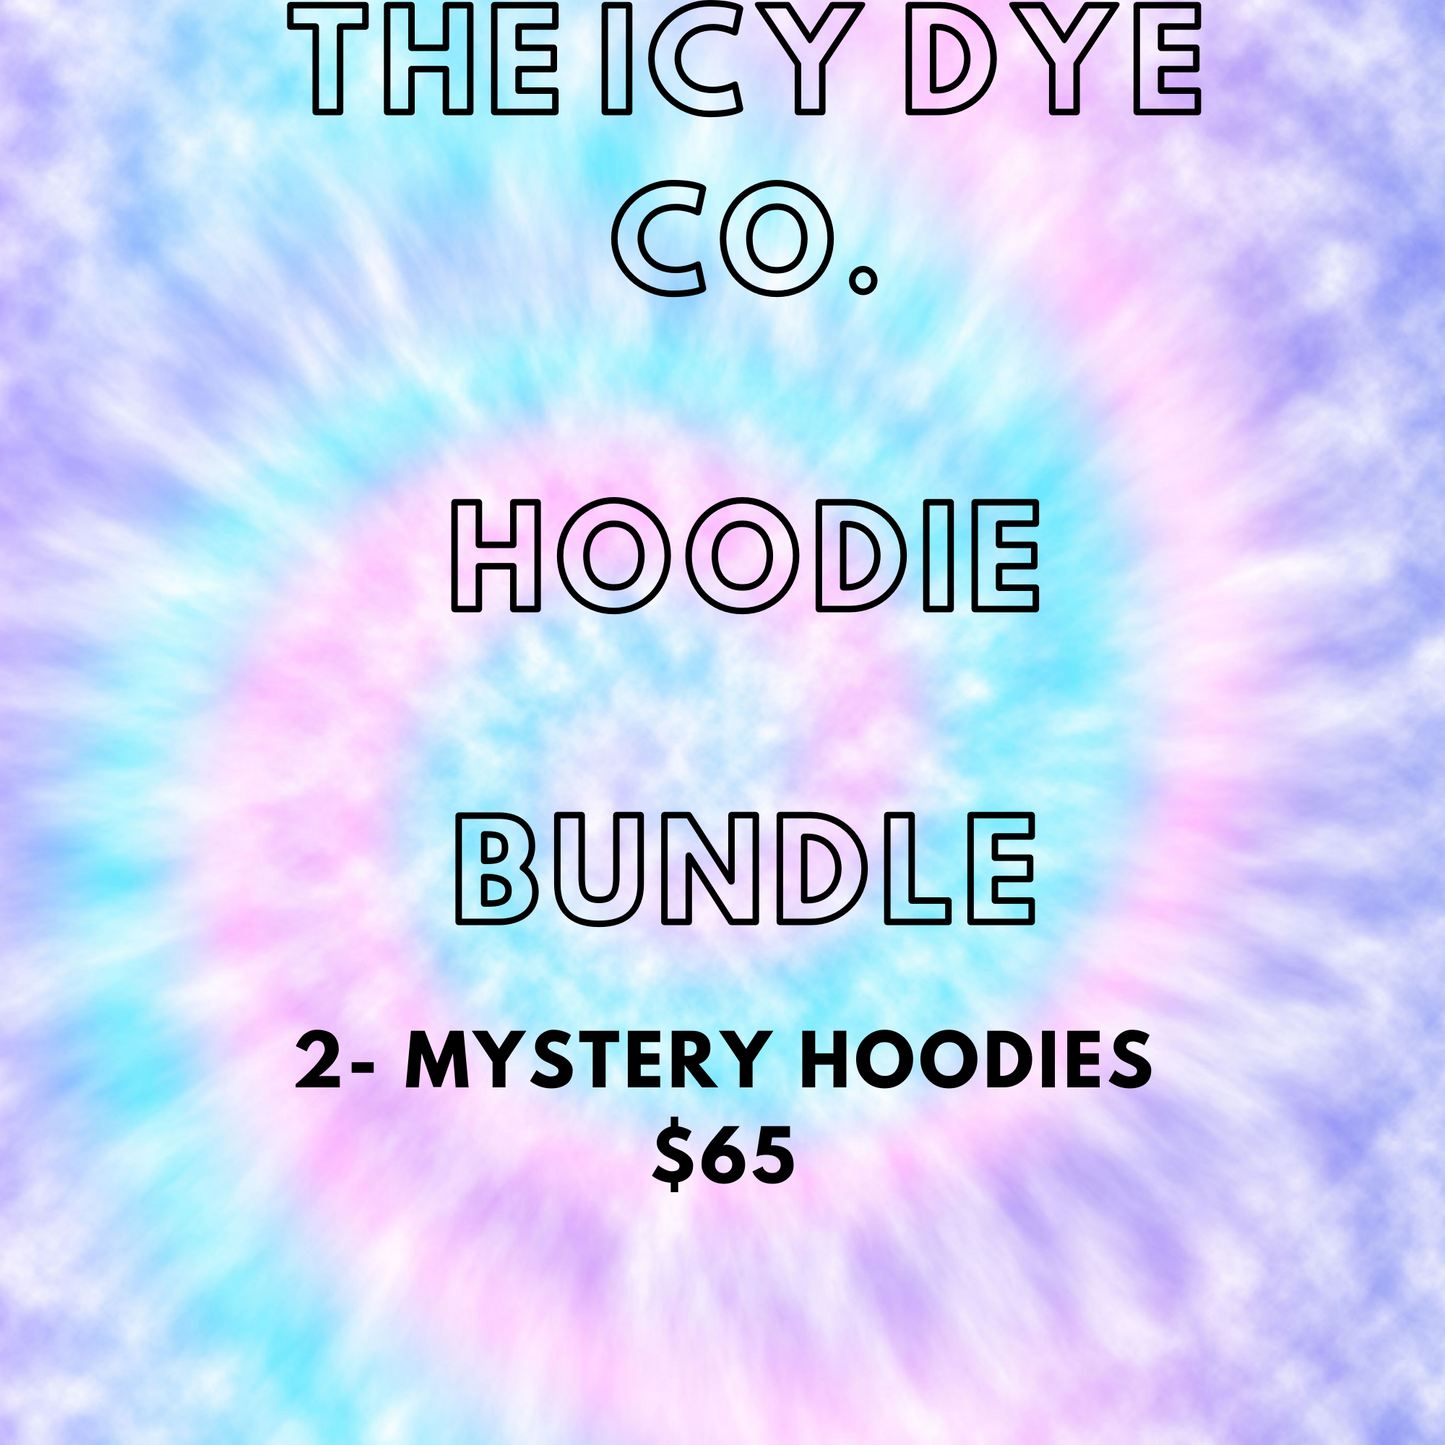 The Icy Dye Co. Hoodie Bundle!